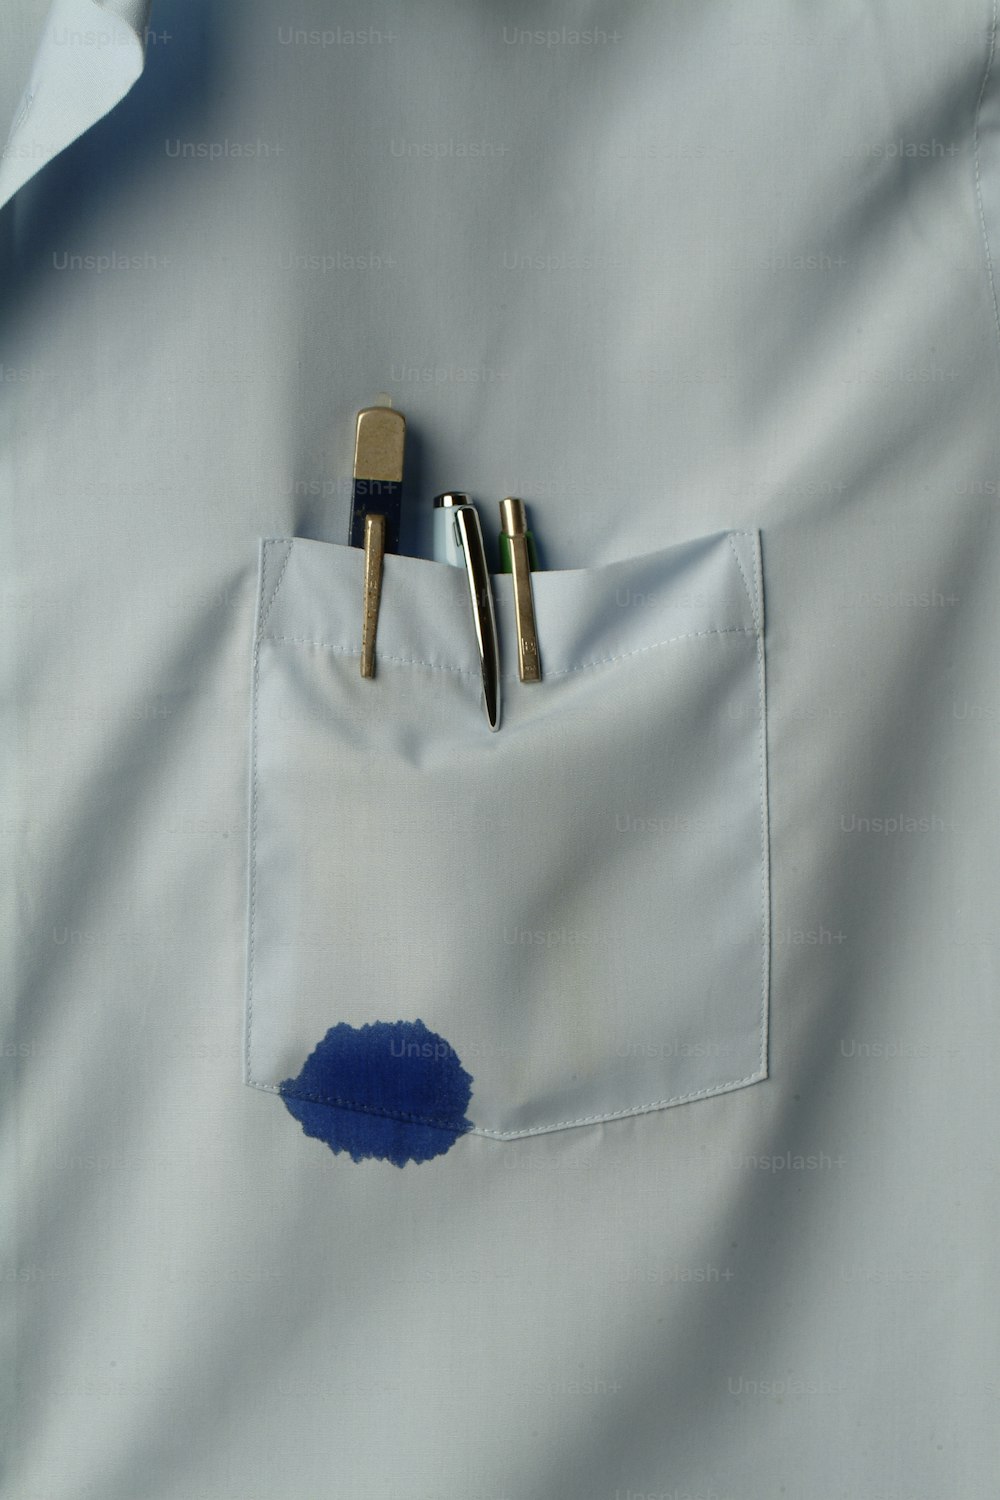 Vista em close-up de um bolso de camisa que contém várias canetas, uma das quais vaza tinta azul, Califórnia, década de 1970 (Photo by Tom Kelley/Getty Images)